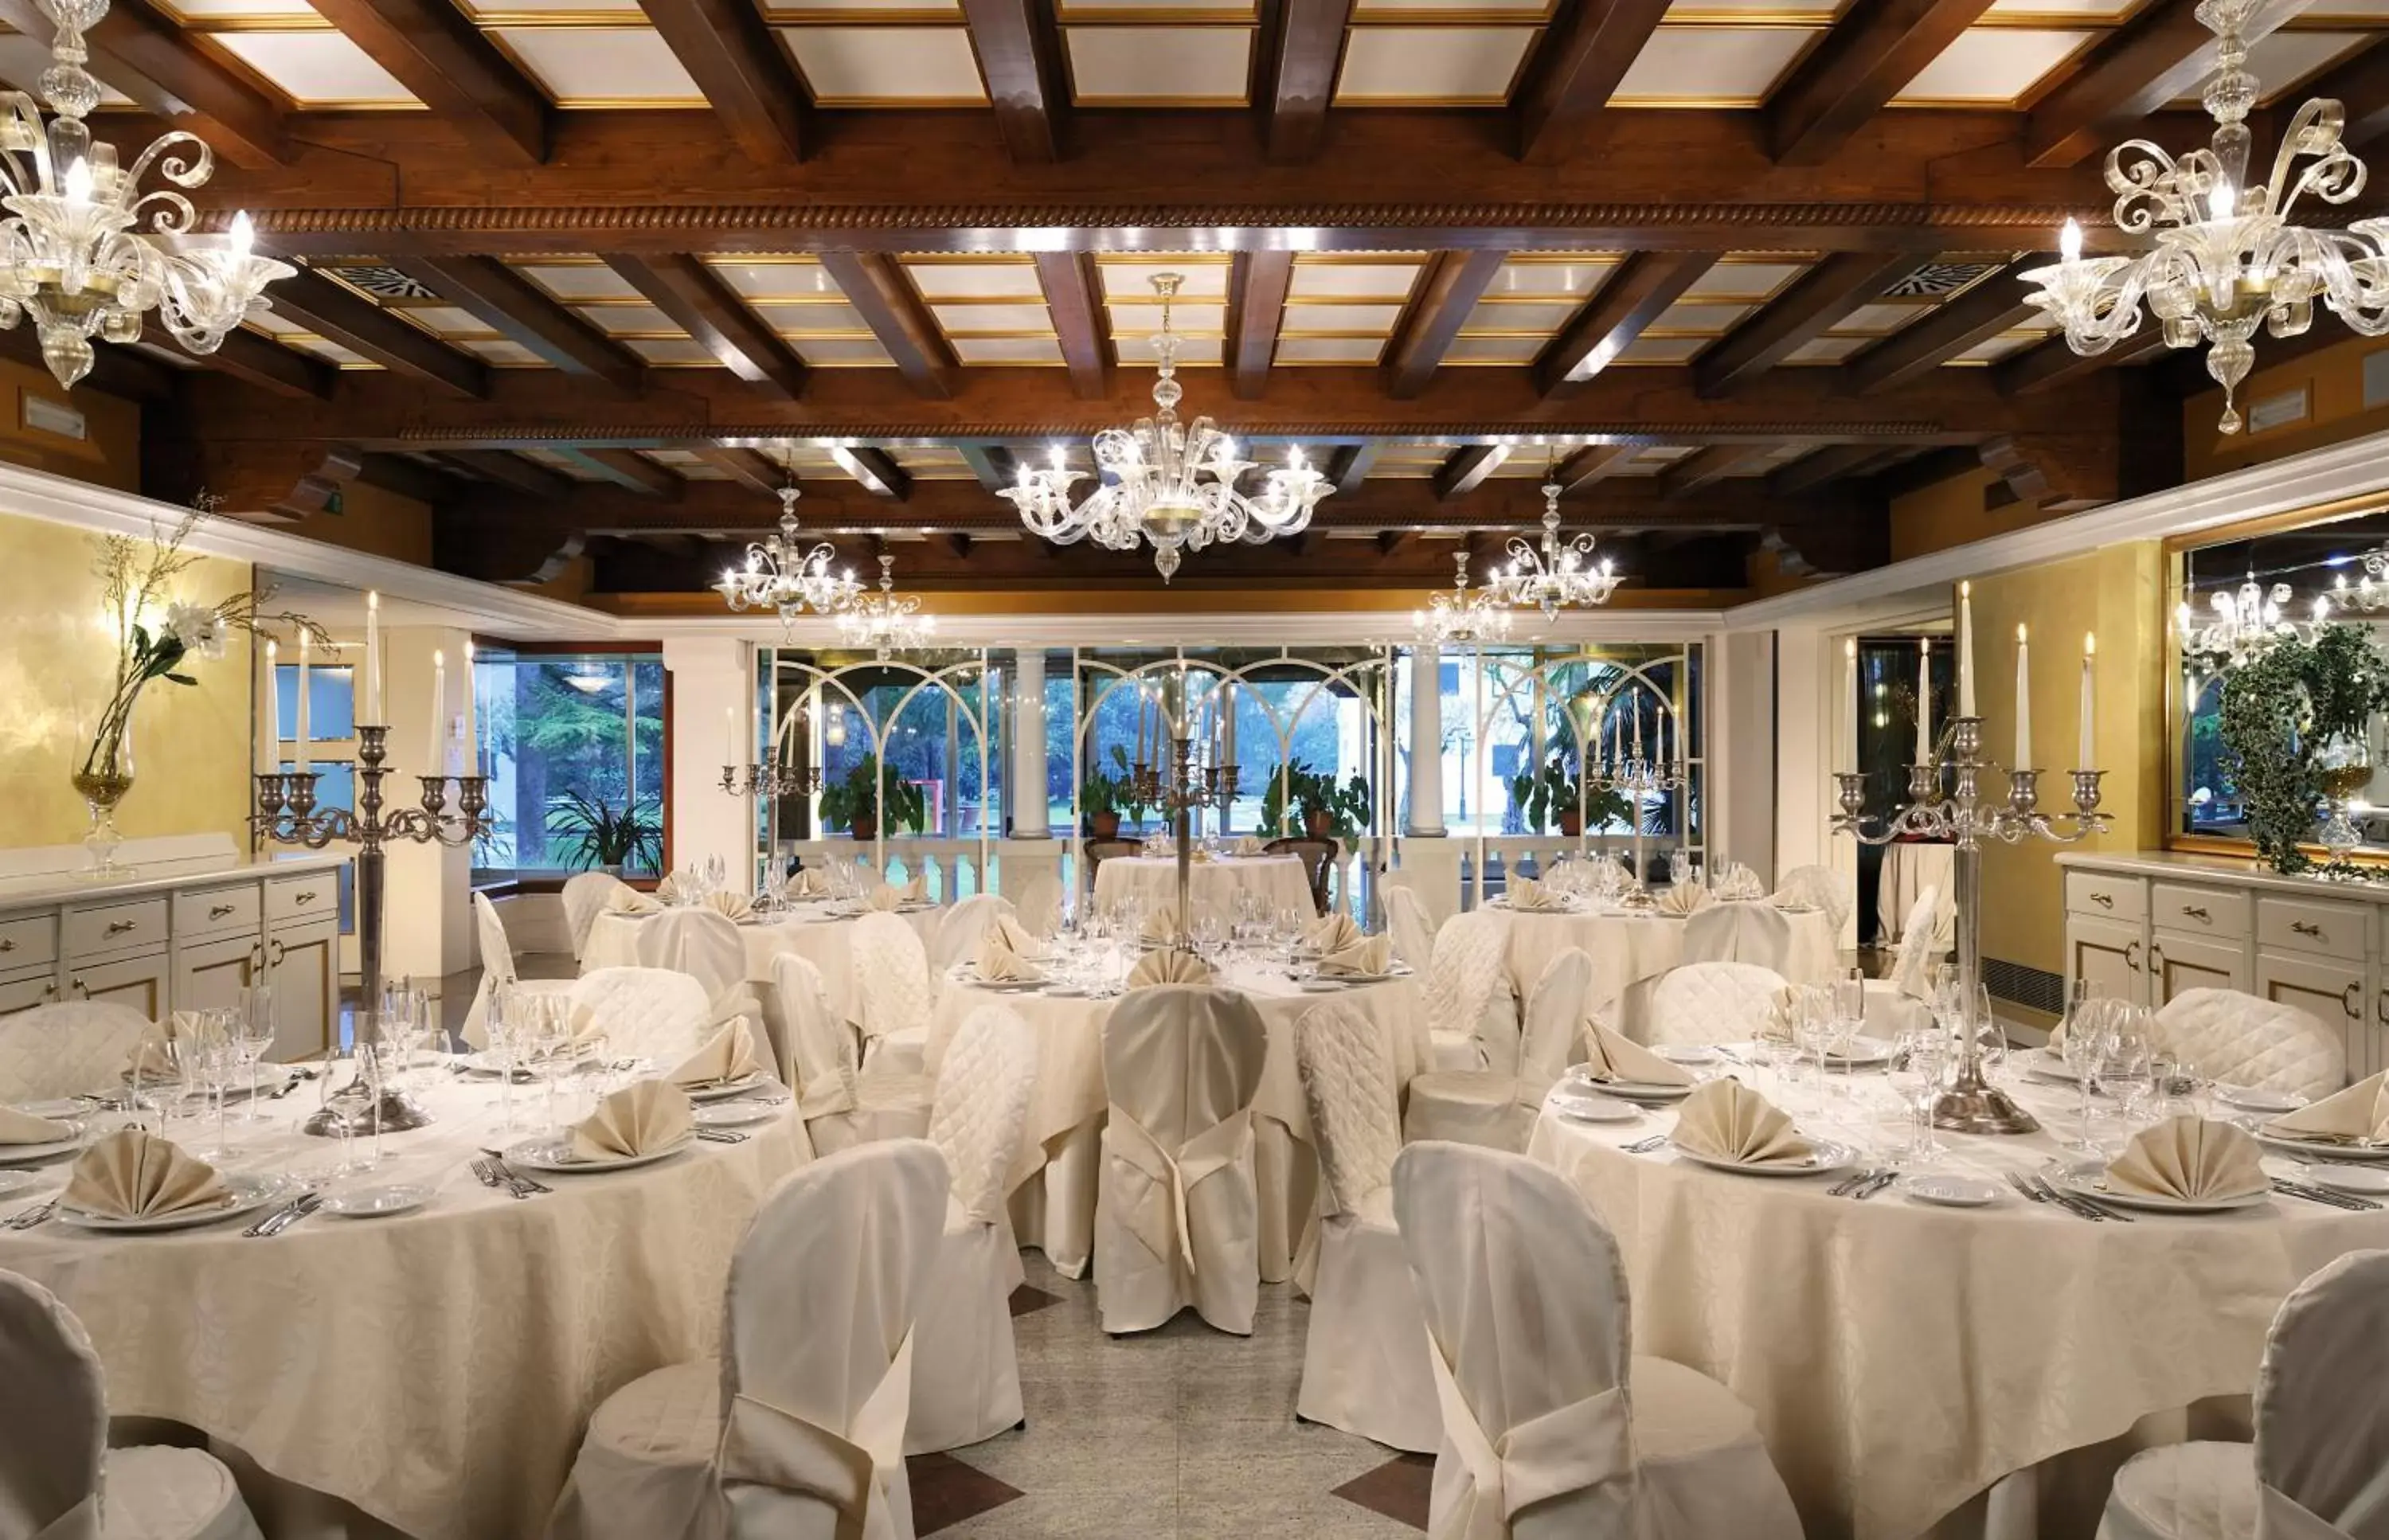 Banquet/Function facilities, Banquet Facilities in Villa Fiorita